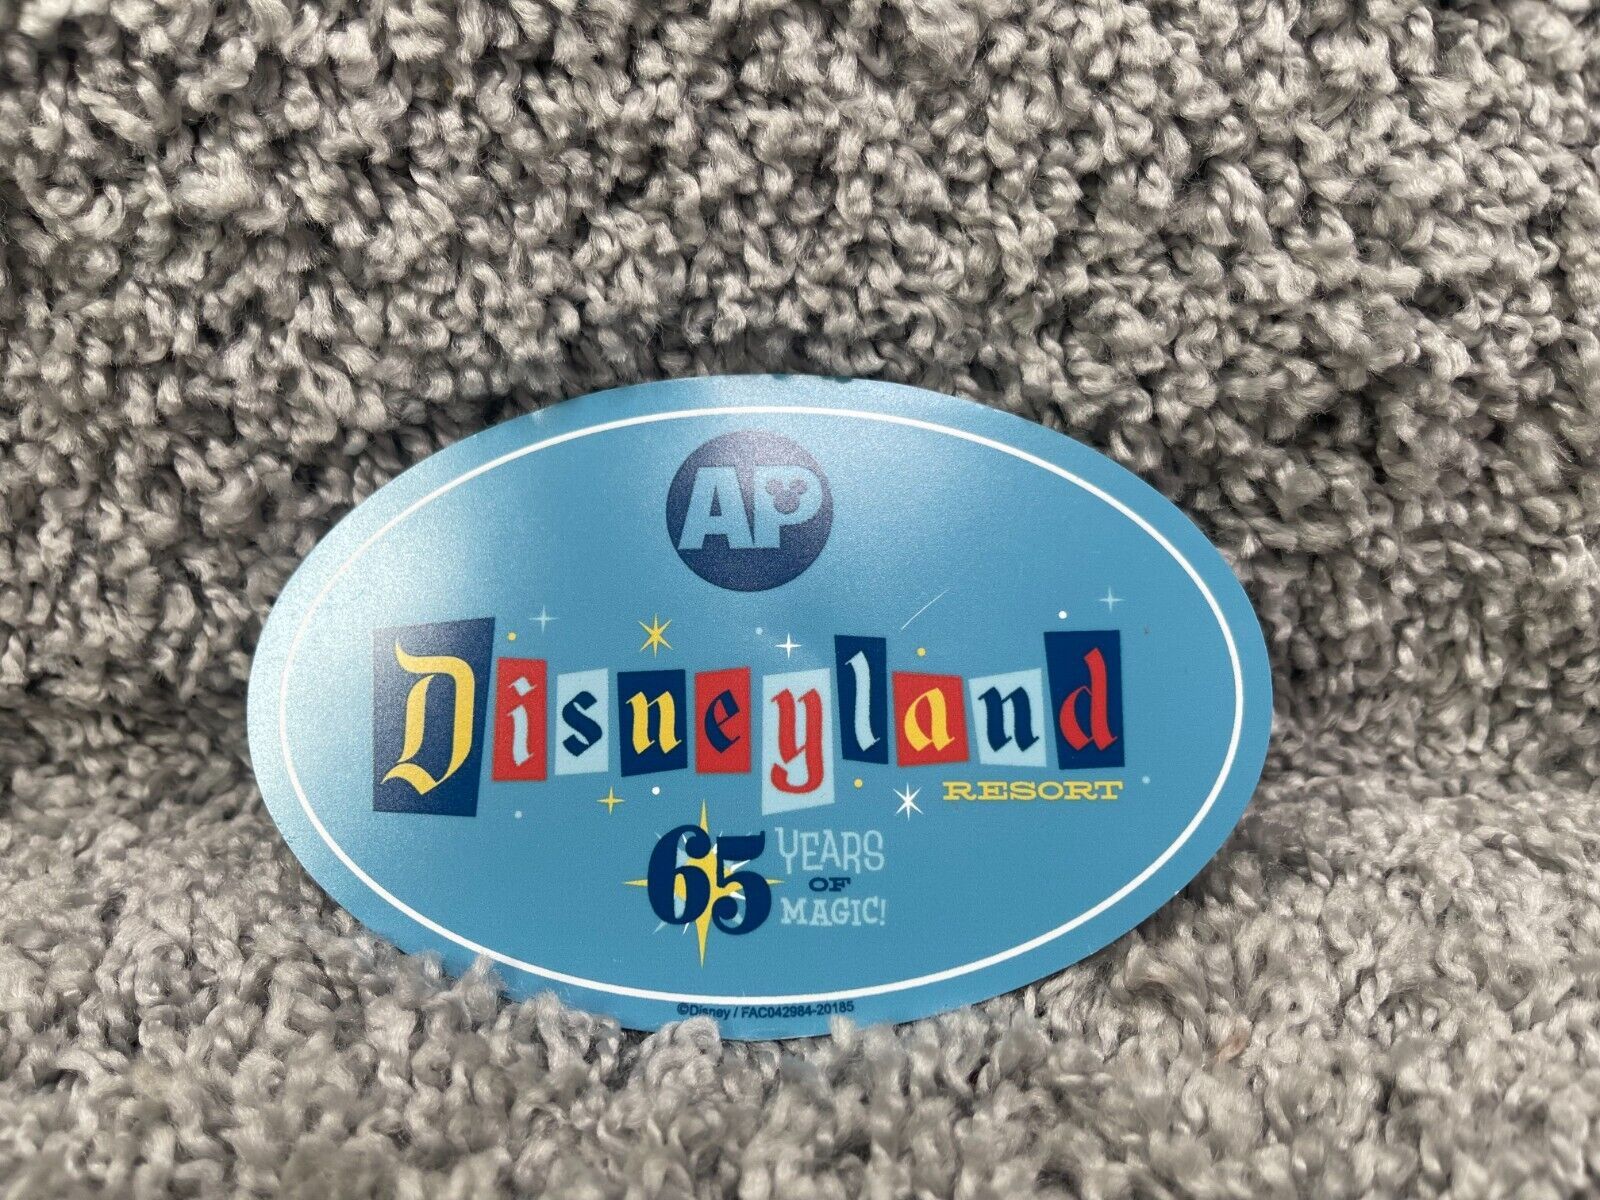 Disneyland Resort 65 Years of Magic Anniversary AP Annual Pass Holder Magnet - $14.17